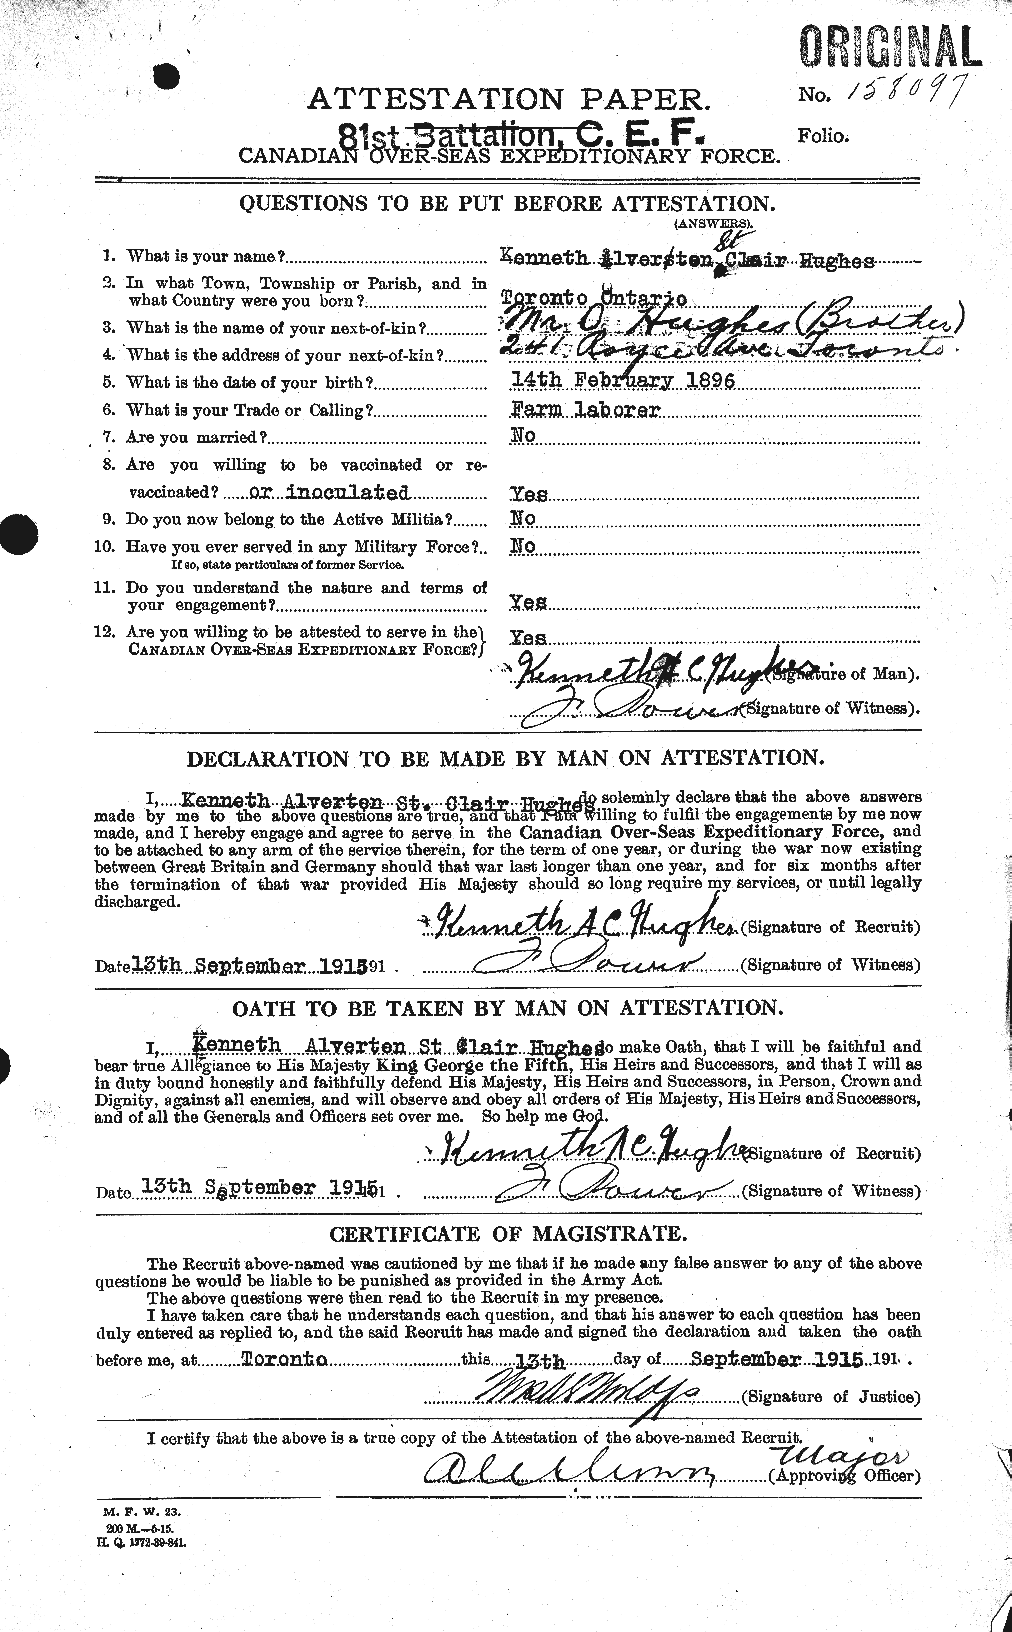 Dossiers du Personnel de la Première Guerre mondiale - CEC 404092a